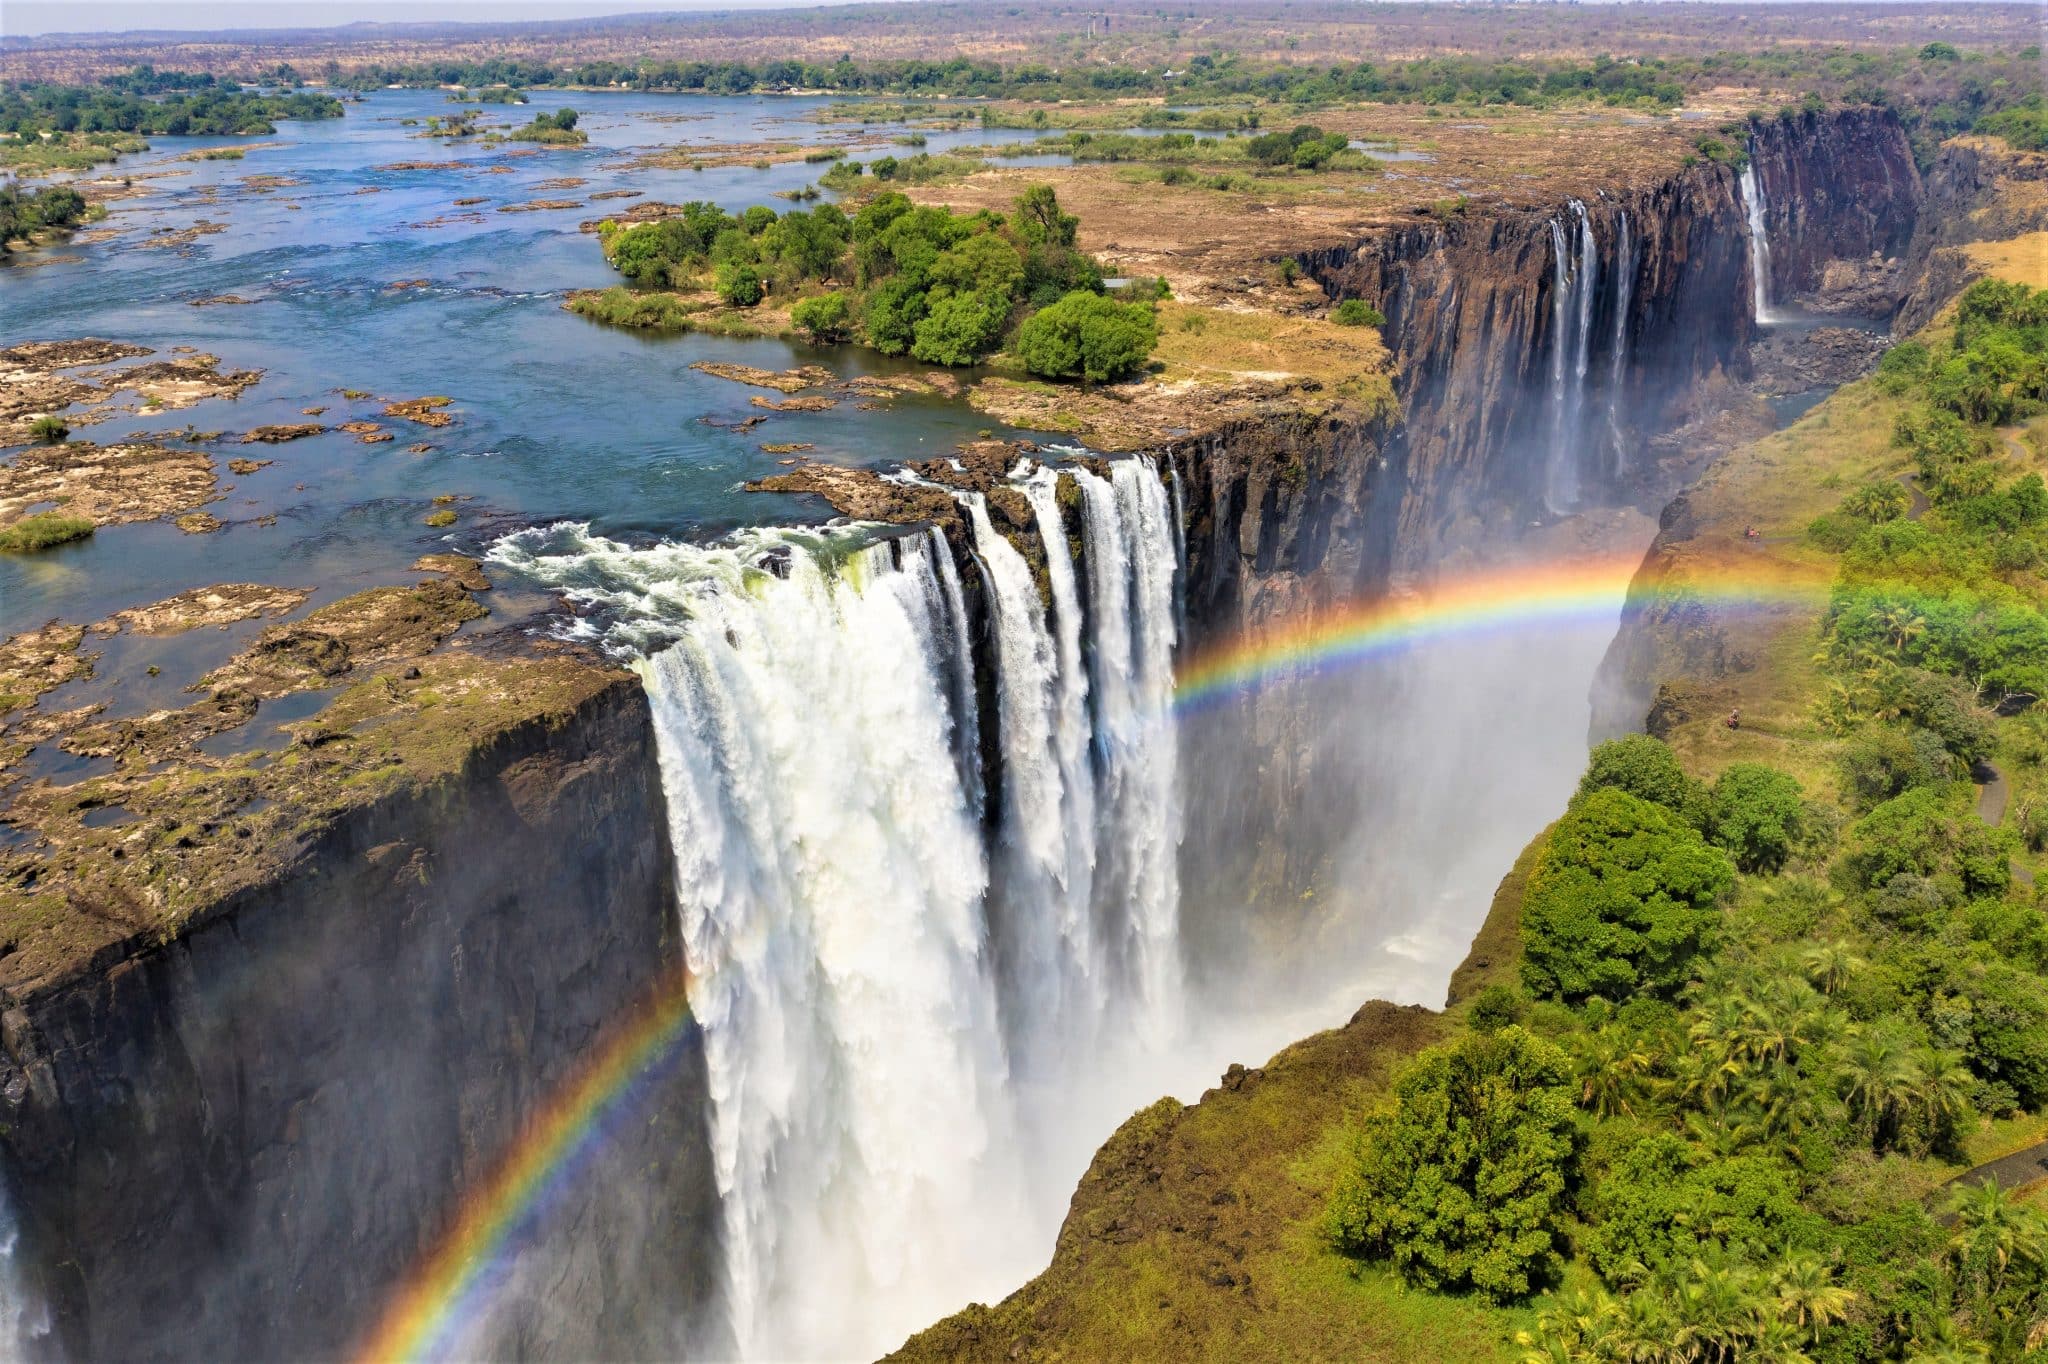 Vue aérienne de la célèbre Victoria Falls au Zimbabwe et en Zambie